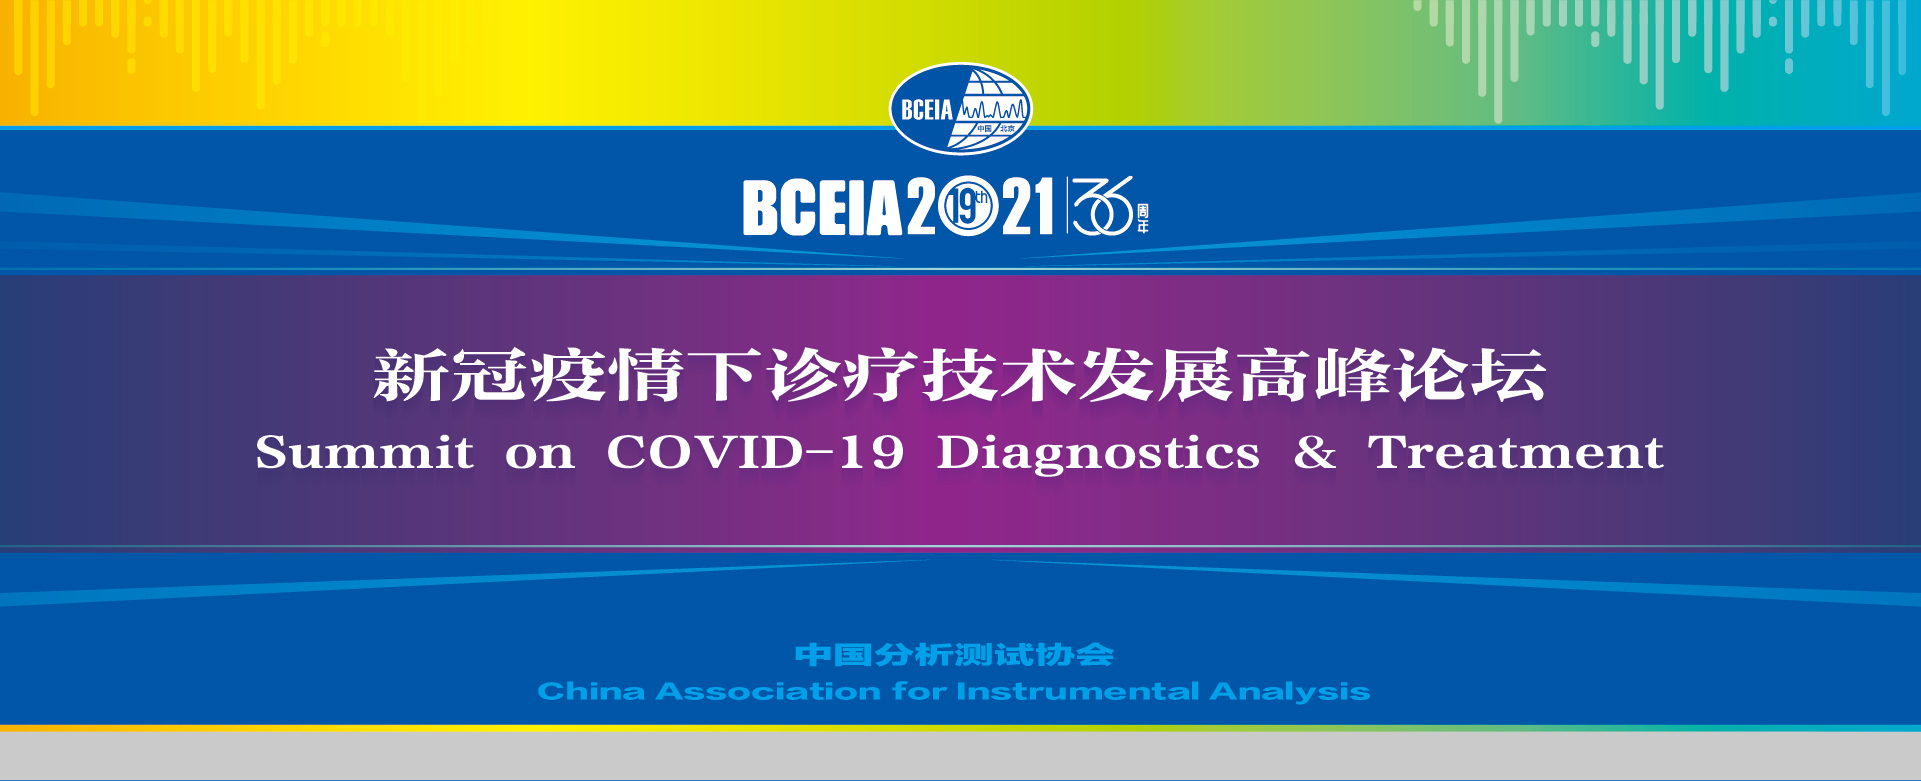 "הפסגה בנושא אבחון וטיפול ב-COVID-19"